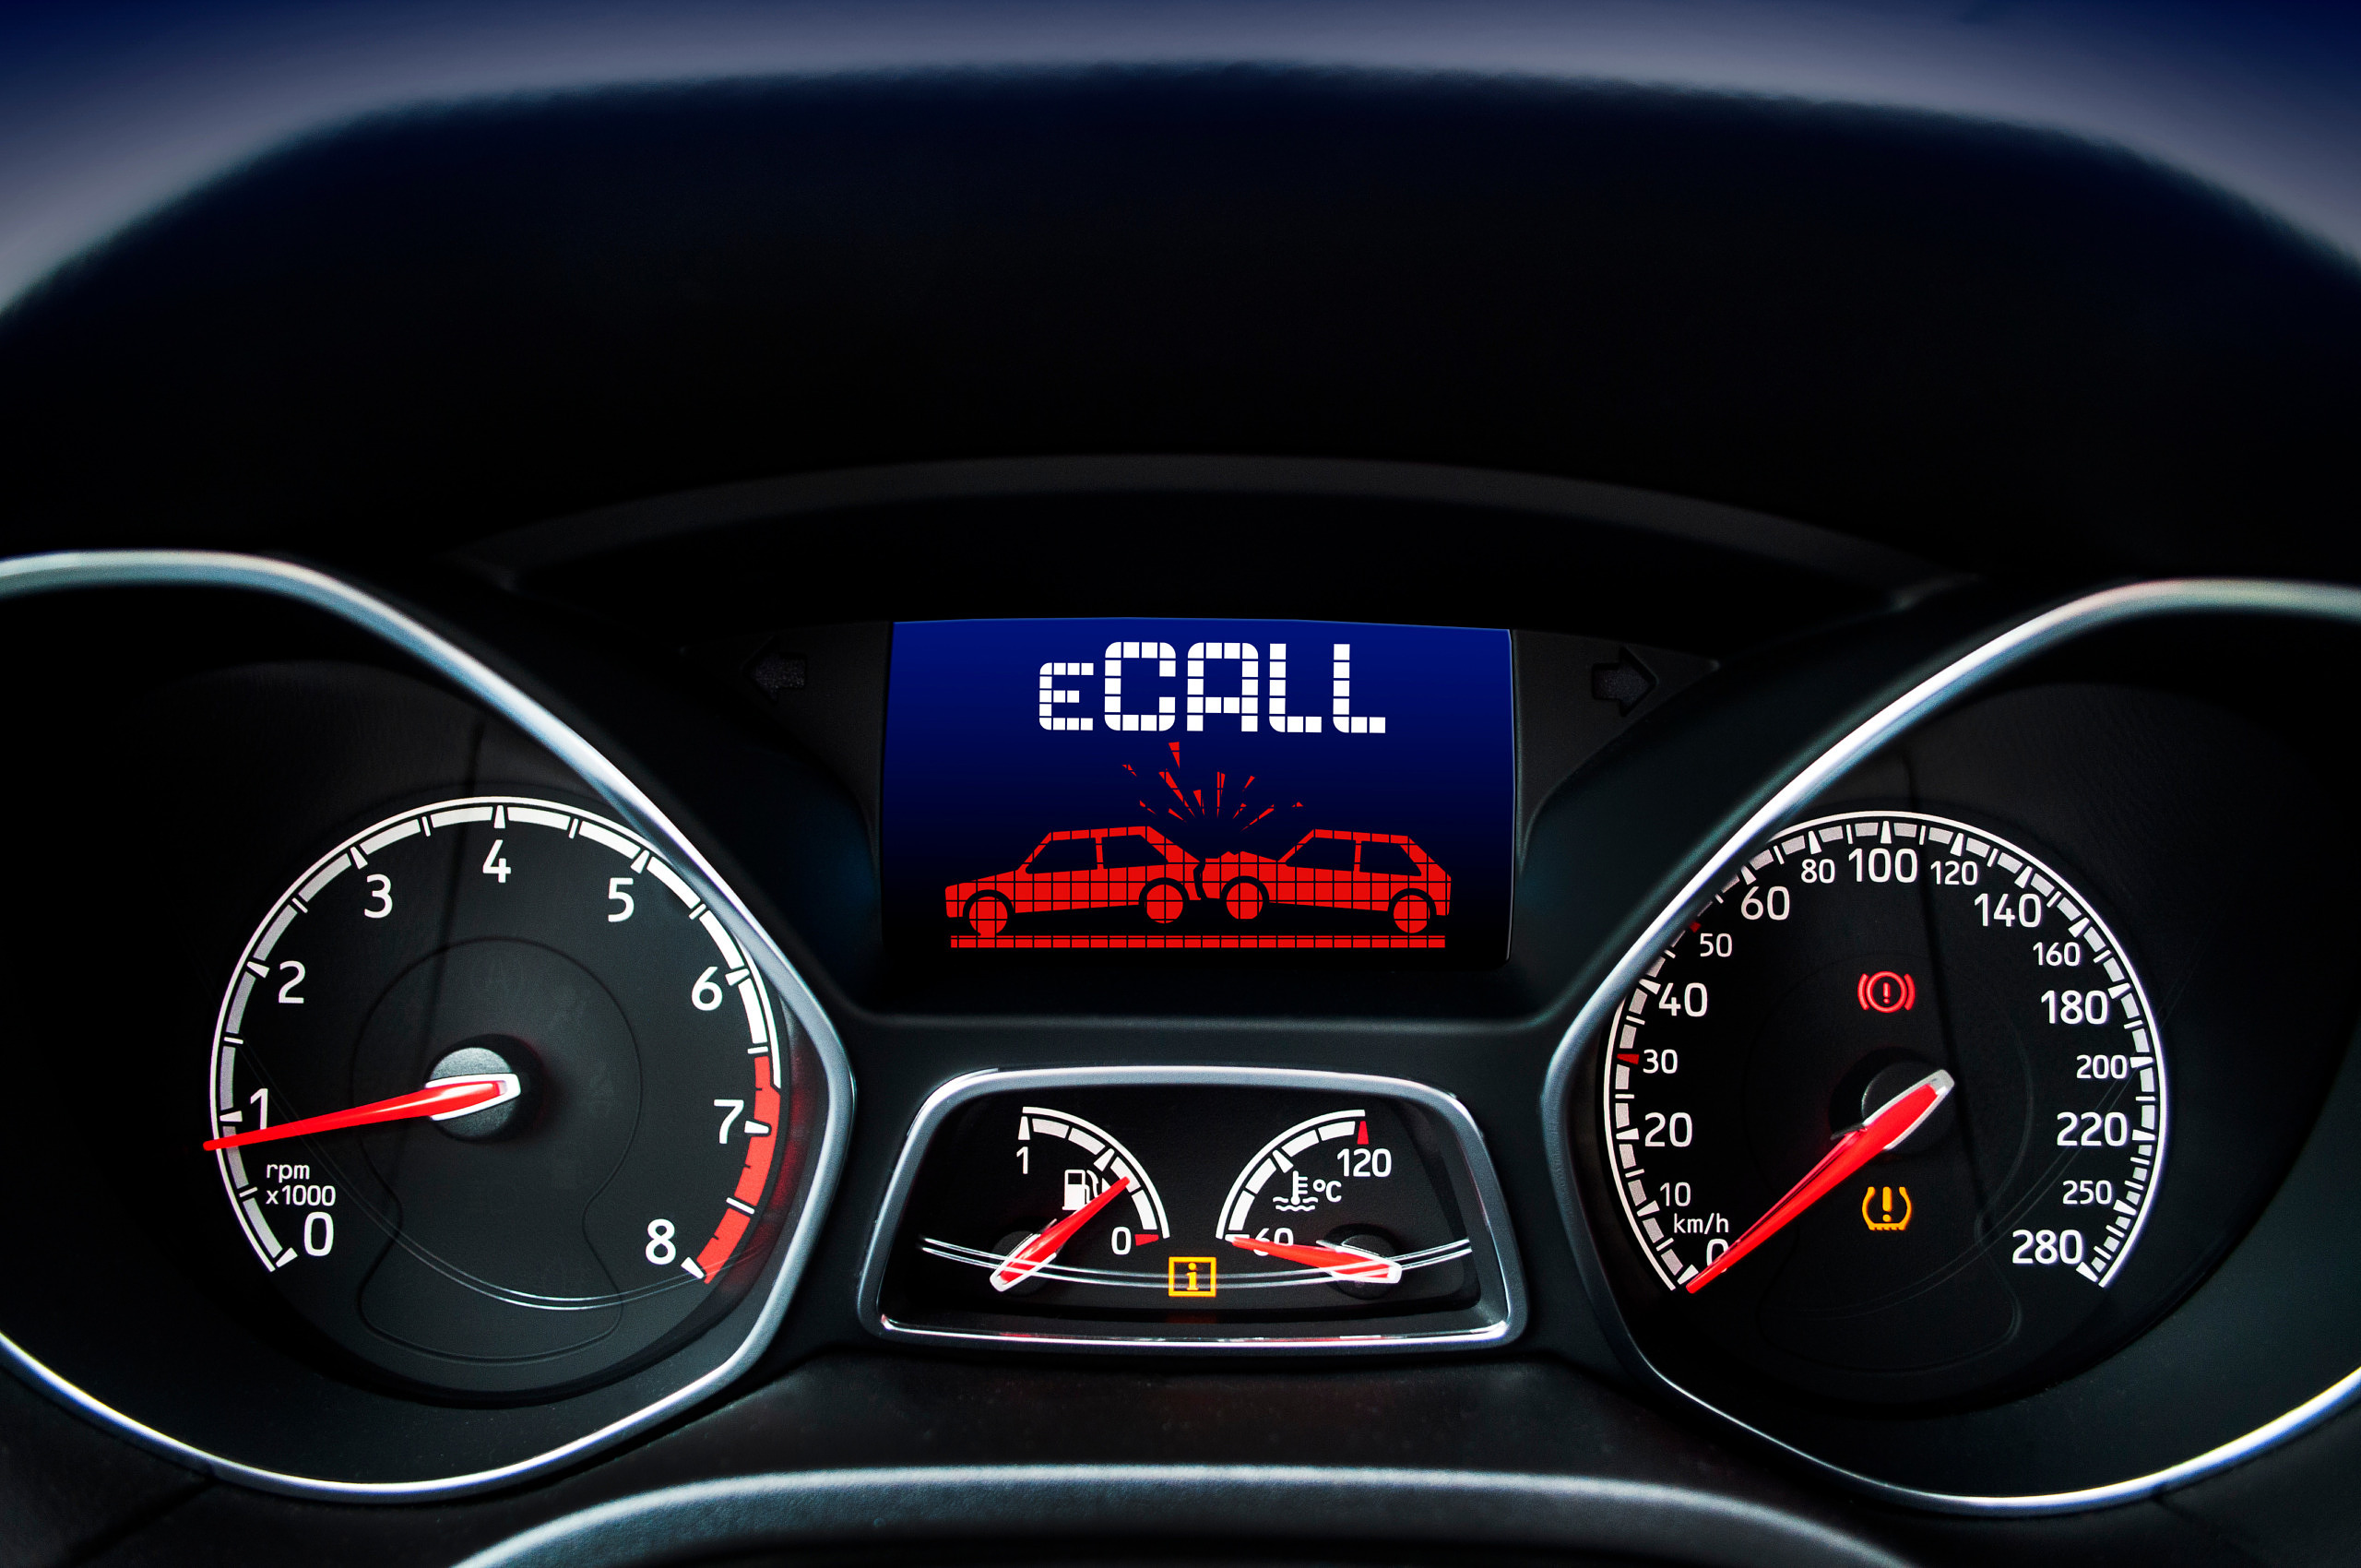 Ein Armaturenbrett im Auto auf dessen Display zwei verunfallte Fahrzeuge und das Wort eCALL zu erkennen sind